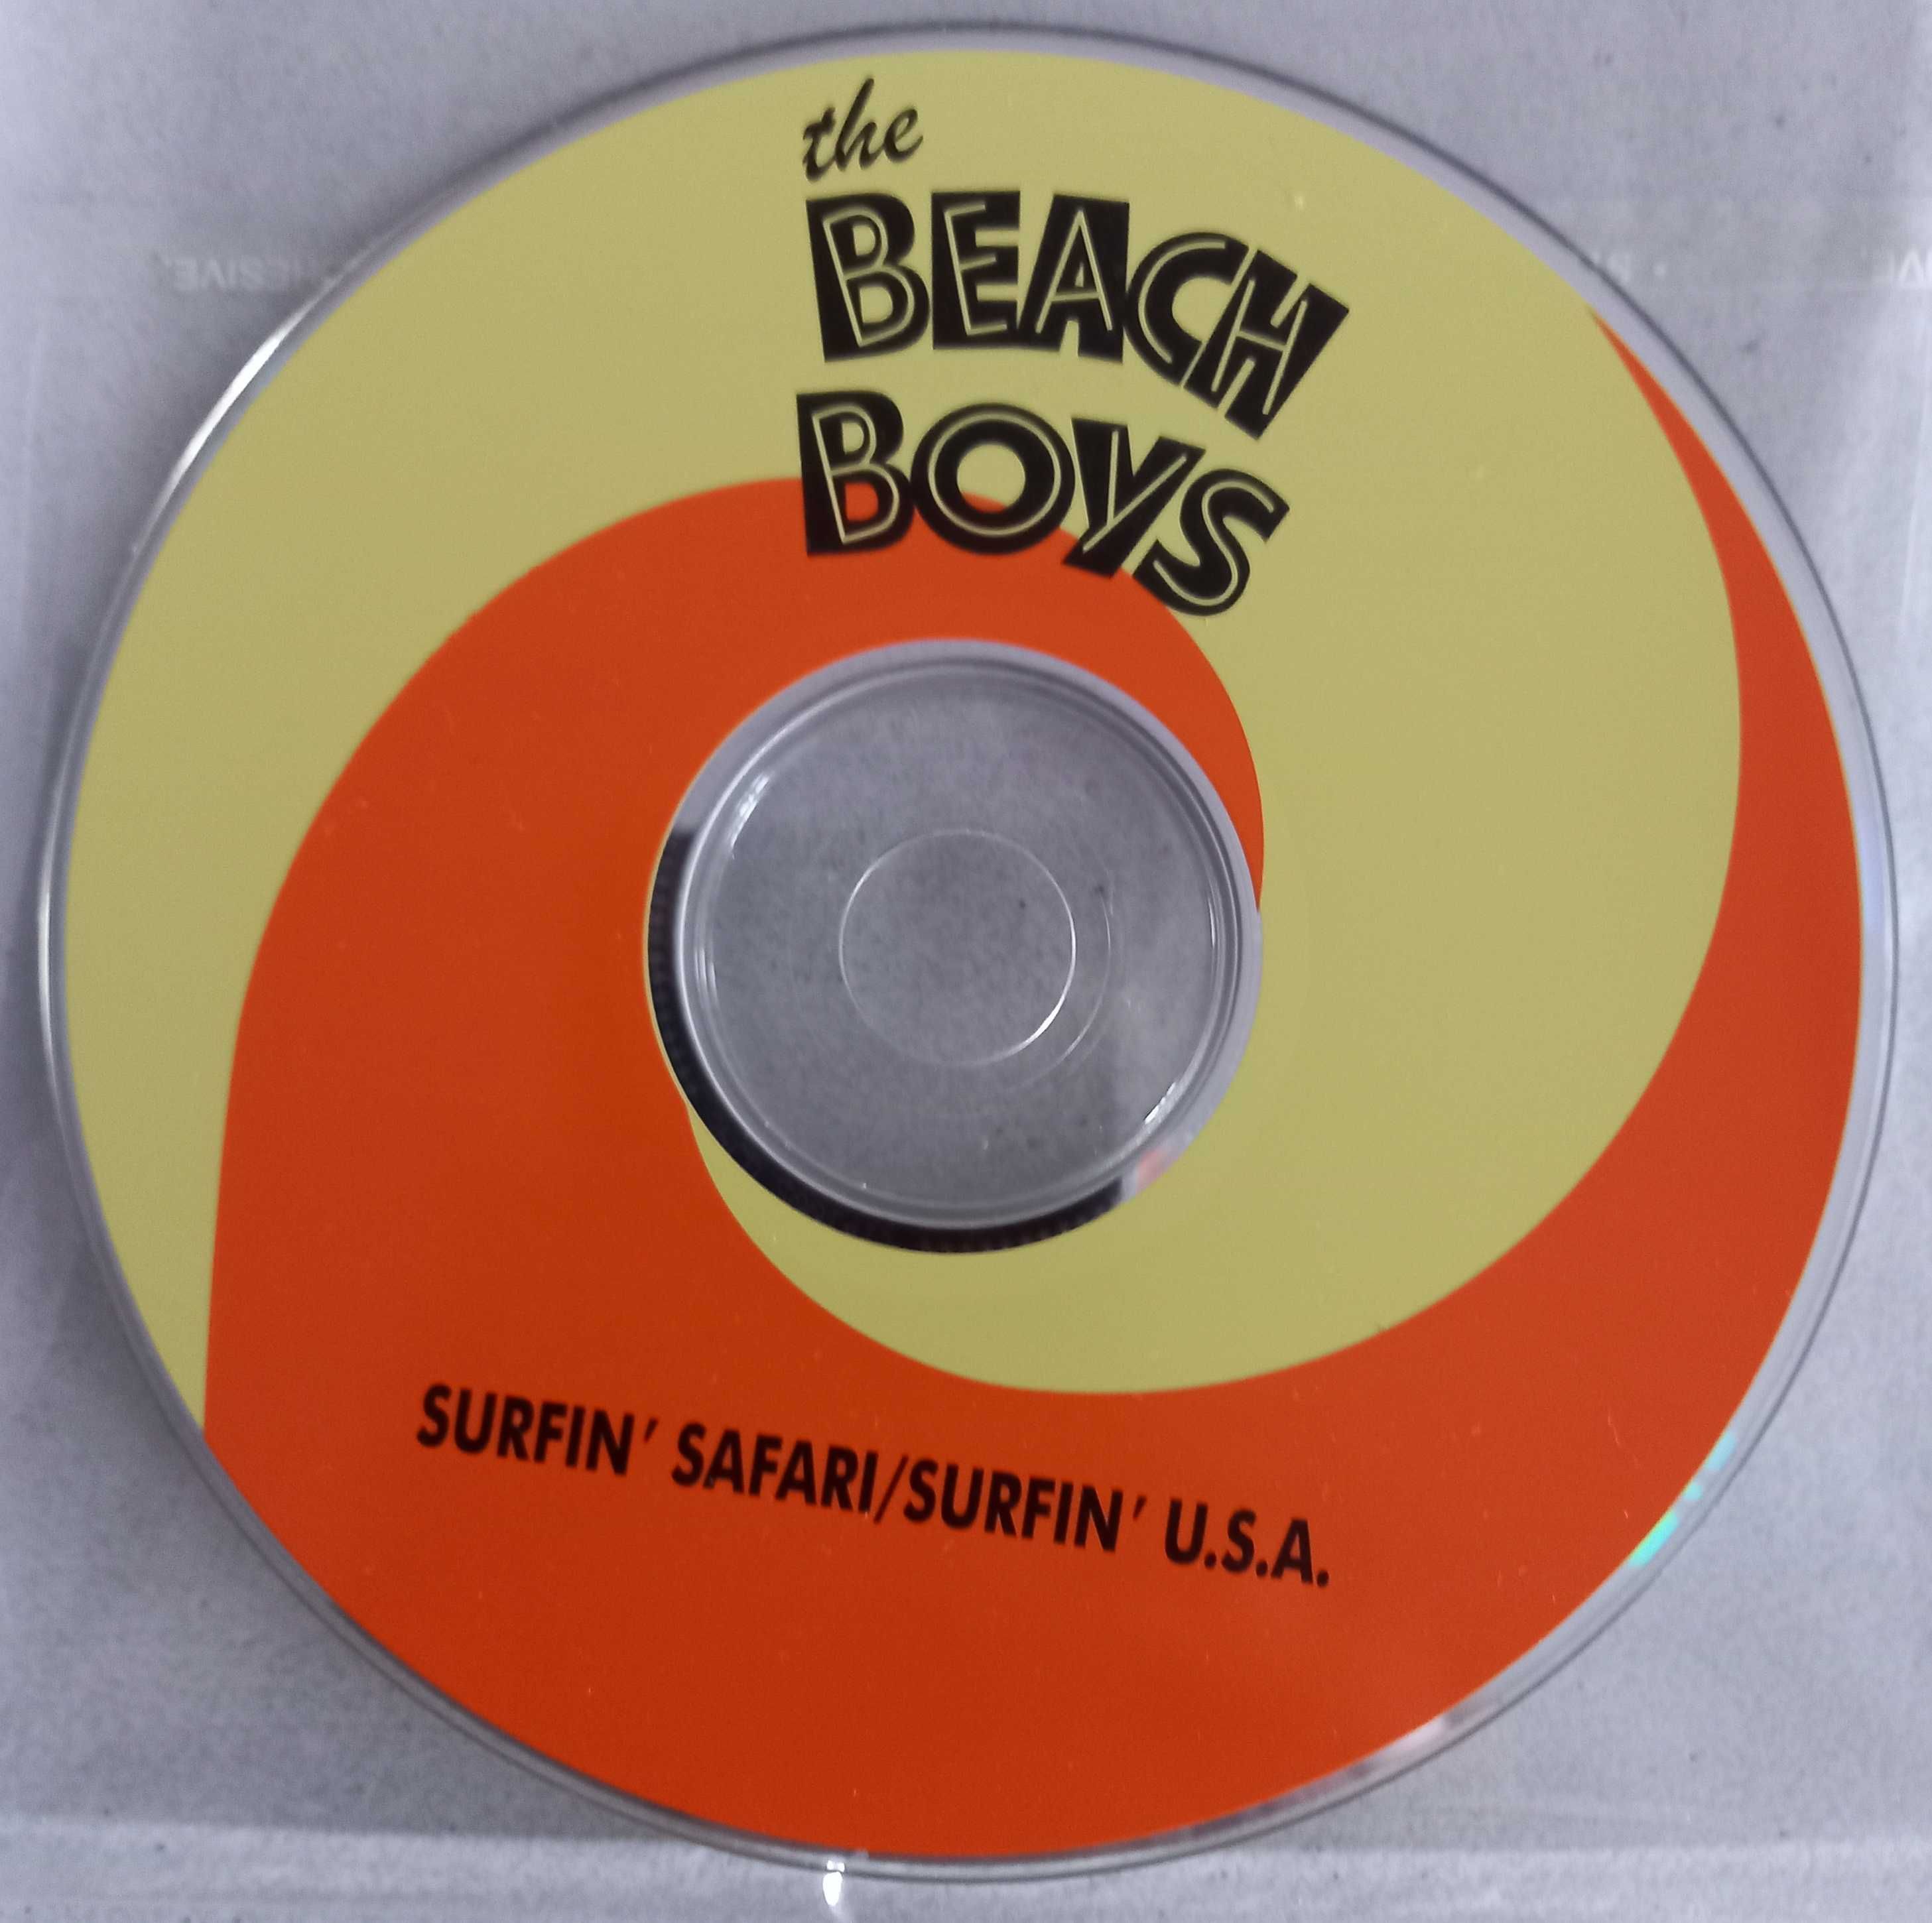 The Beach Boys "Surfin' USA", "All Summer Long", "Pet Sounds"